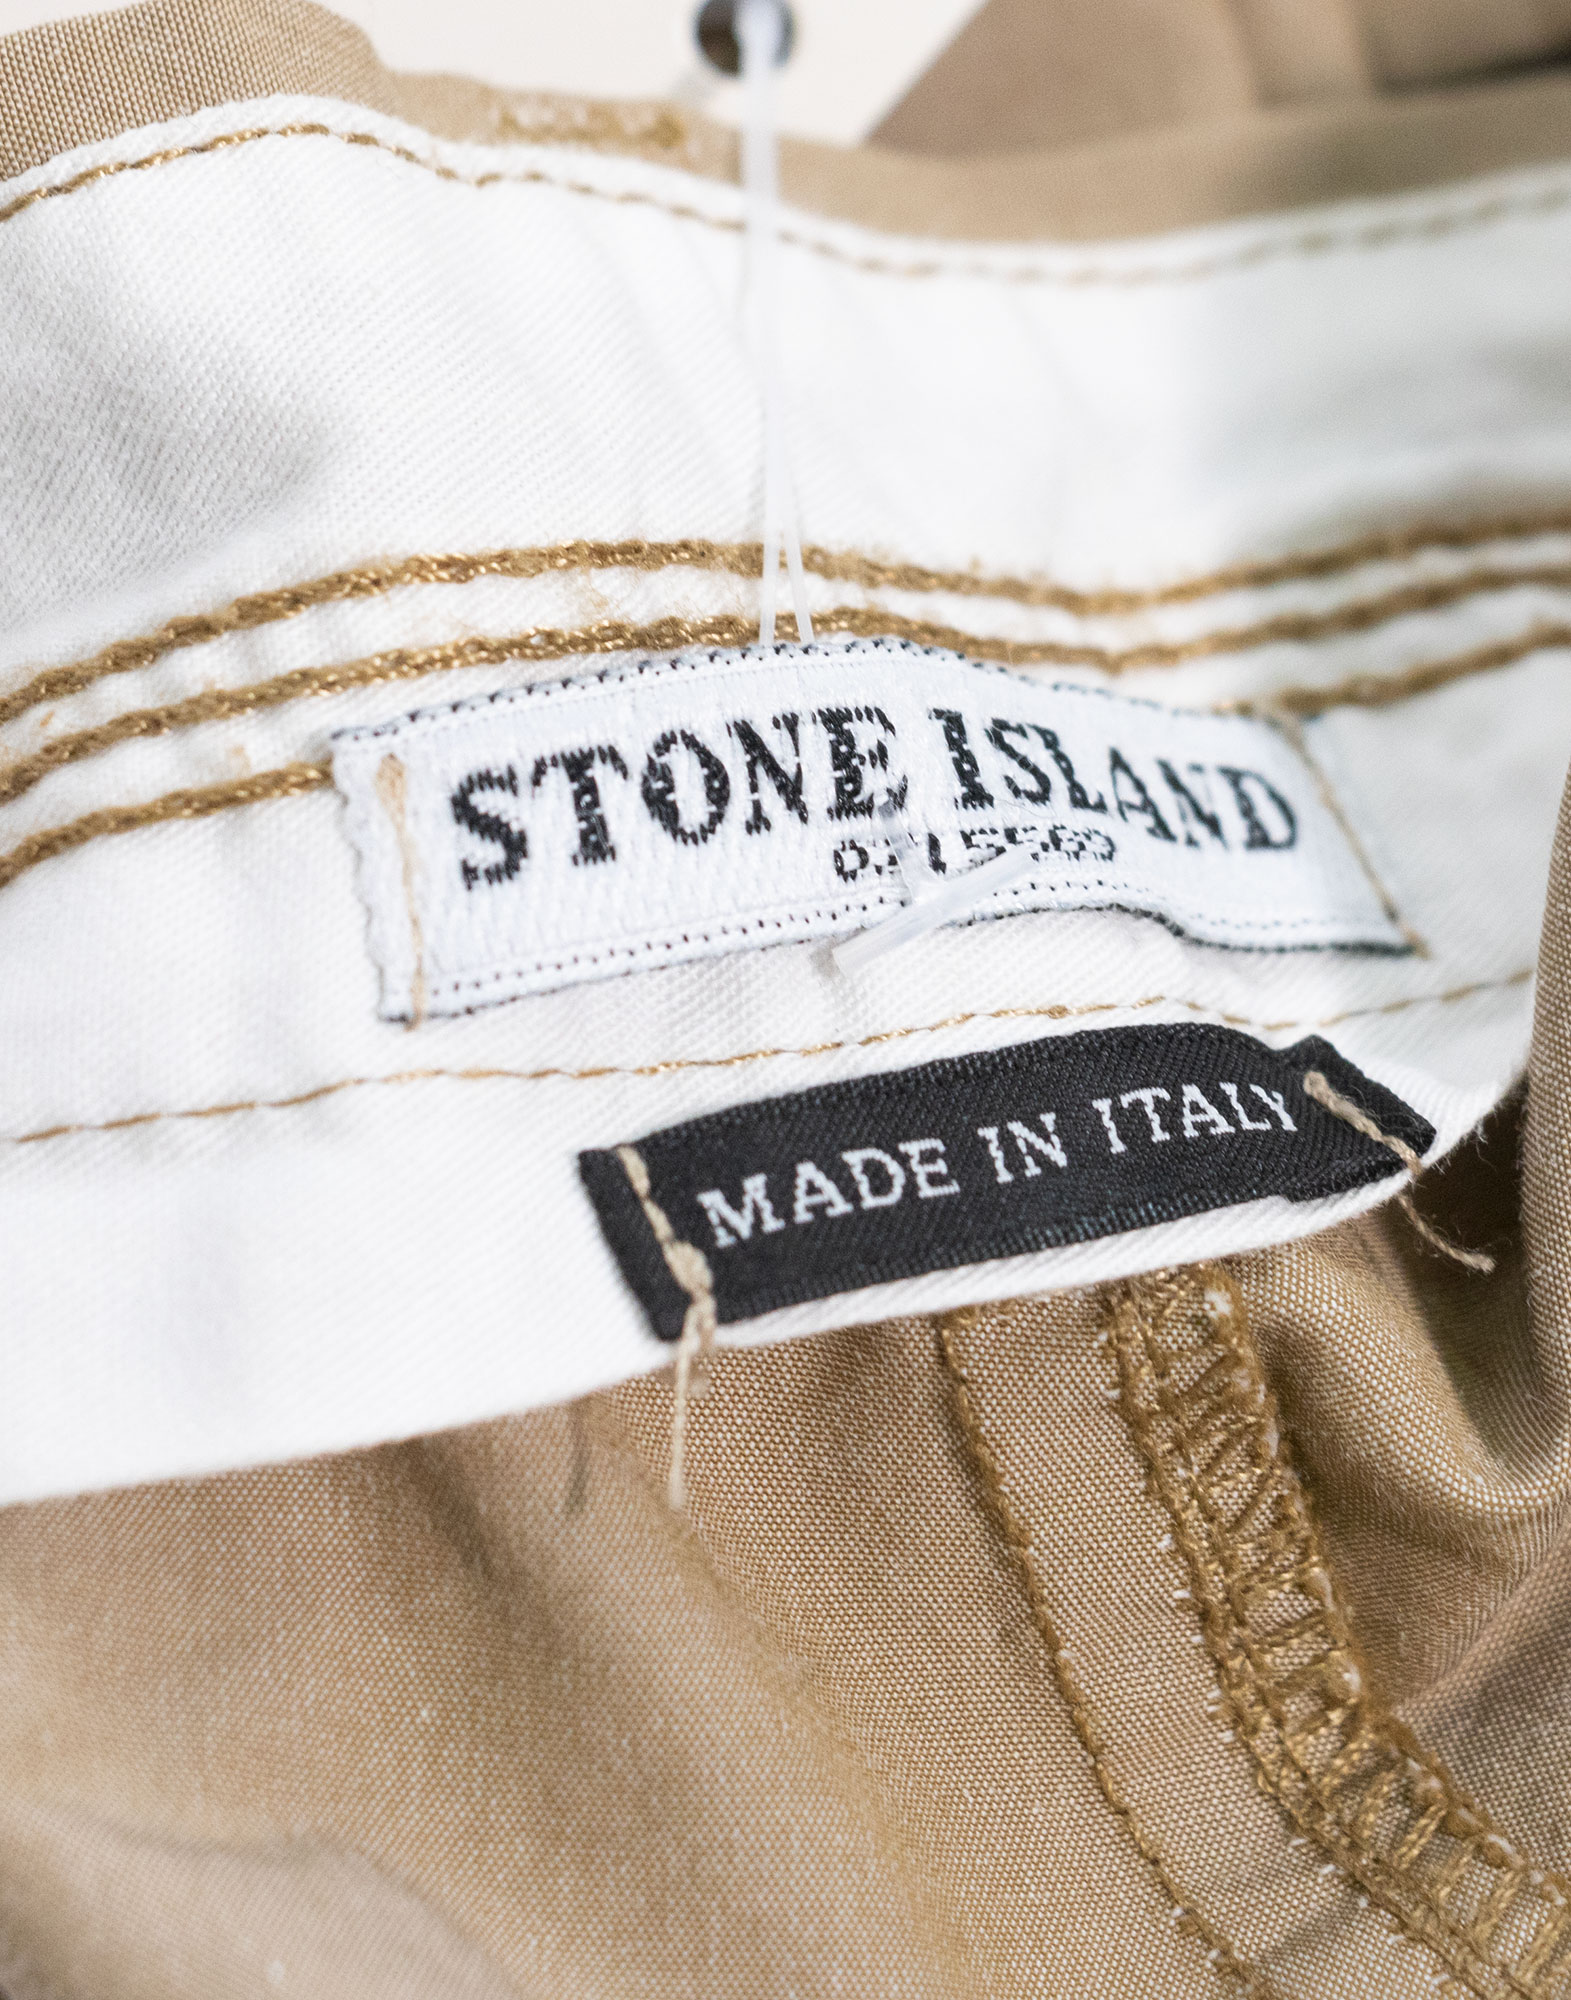 STONE ISLAND - Pantaloni chino in cotone